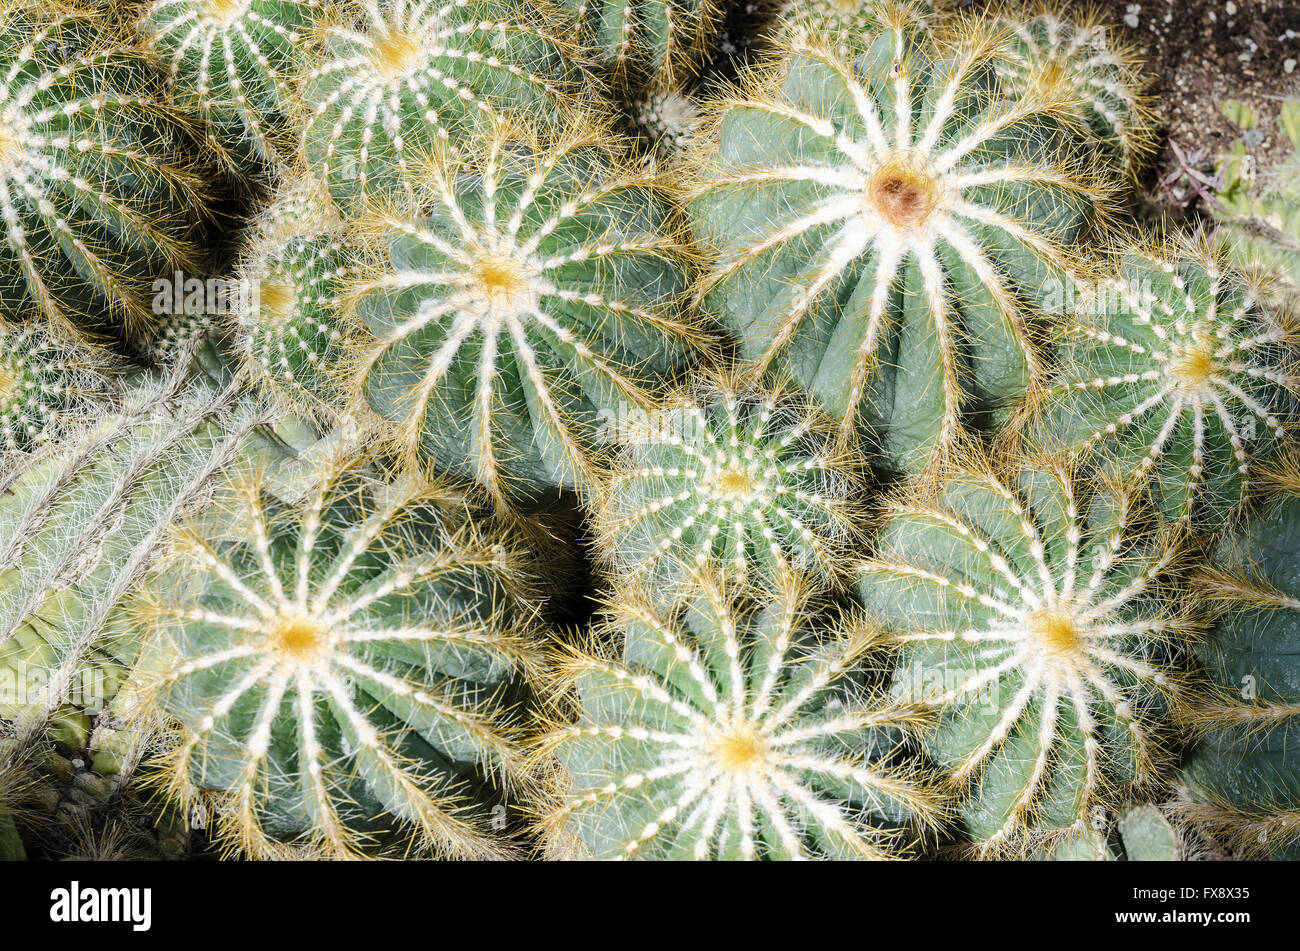 Parodia magnifica cacti in a greenhouse Stock Photo